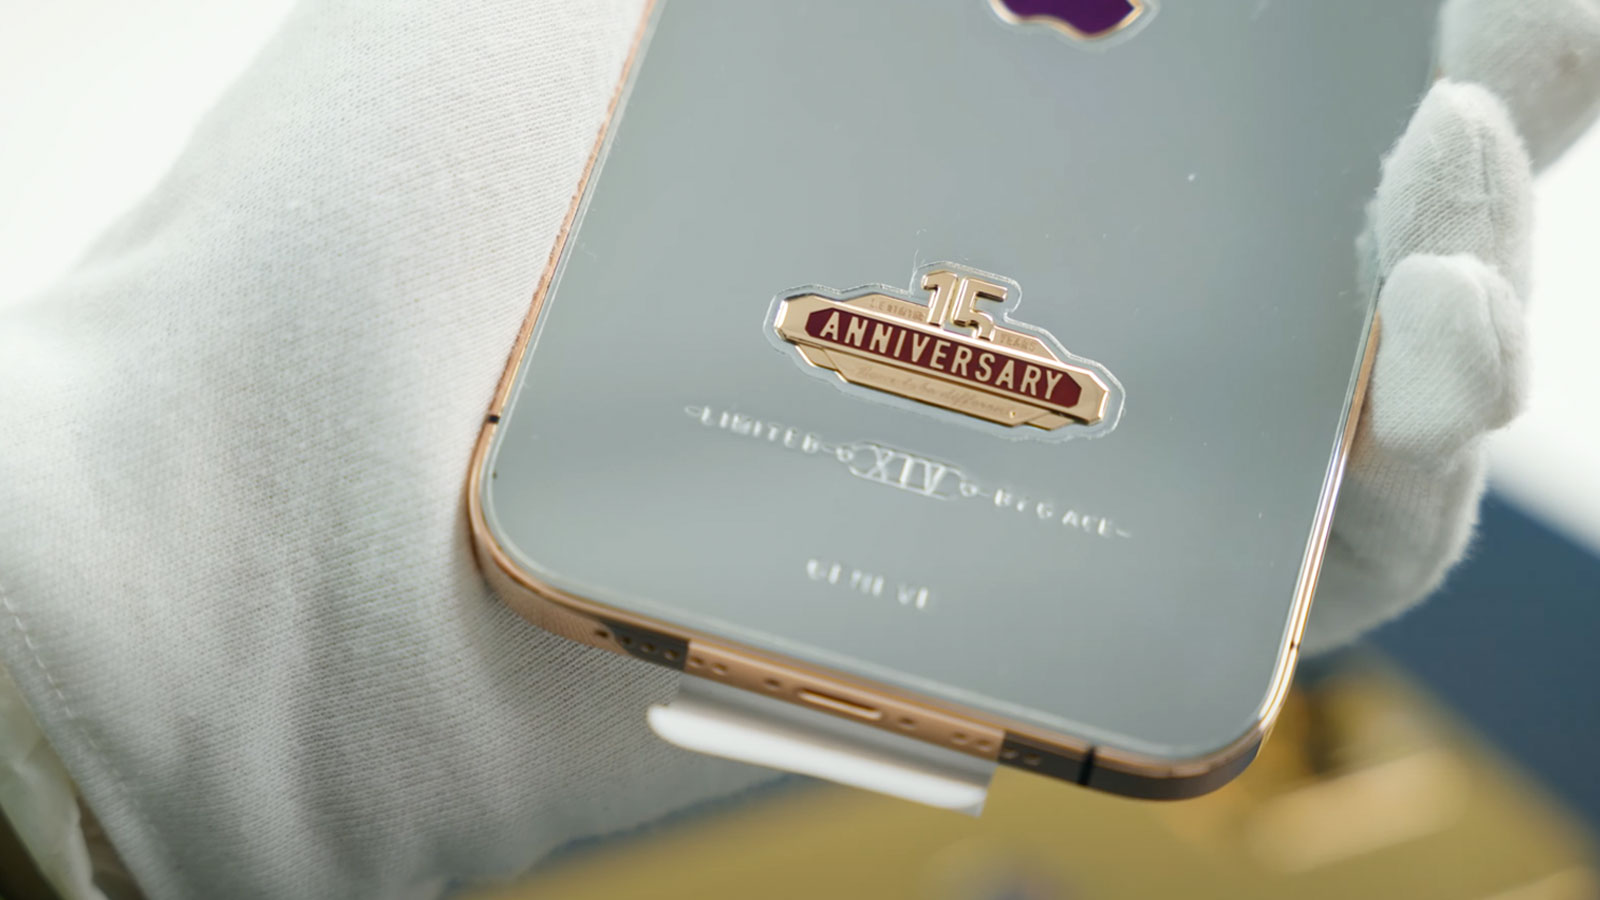 Điện thoại iPhone 14 Pro Max mạ vàng, đính kim cương: Không chỉ là chiếc điện thoại thông minh thông thường, chiếc iPhone 14 Pro Max mạ vàng và đính kim cương sẽ khiến bạn phải ngỡ ngàng với sự sang trọng và đẳng cấp của nó. Với mức giá cao hơn nhưng sẽ mang lại cho bạn sự khác biệt rõ rệt trong cuộc sống.